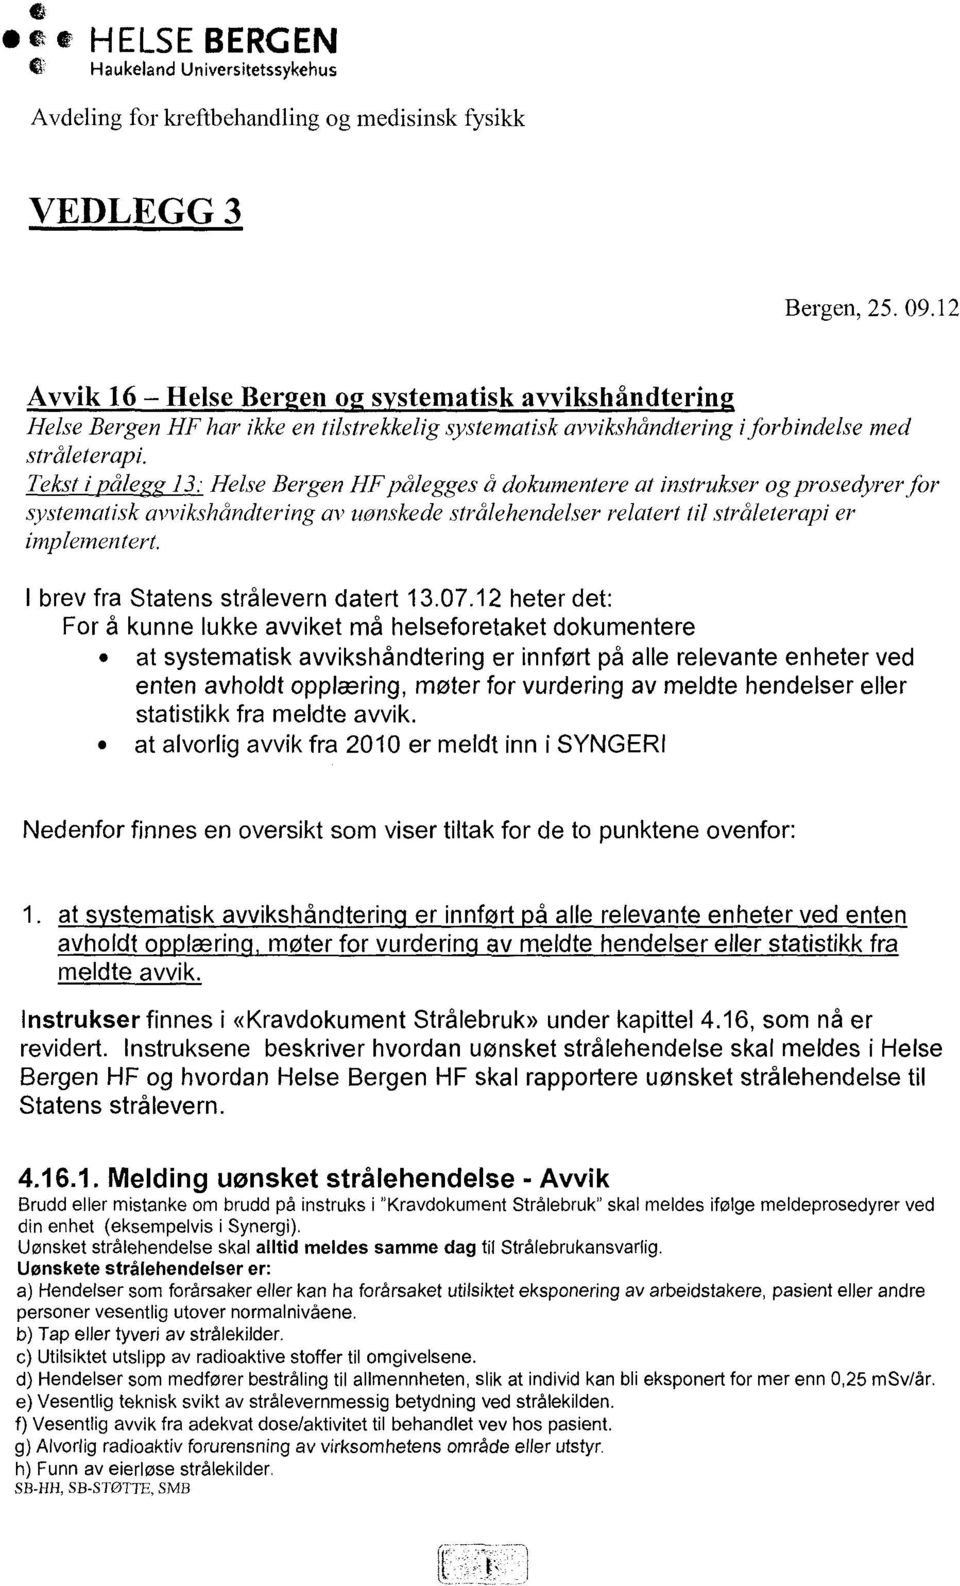 Tekst i pålegg 13: Helse Bergen HF pålegges å dokumentere at instrukser og prosedyrer for systematisk avvikshåndtering av uonskede strålehendelser relatert til stråleterapi er implementert.